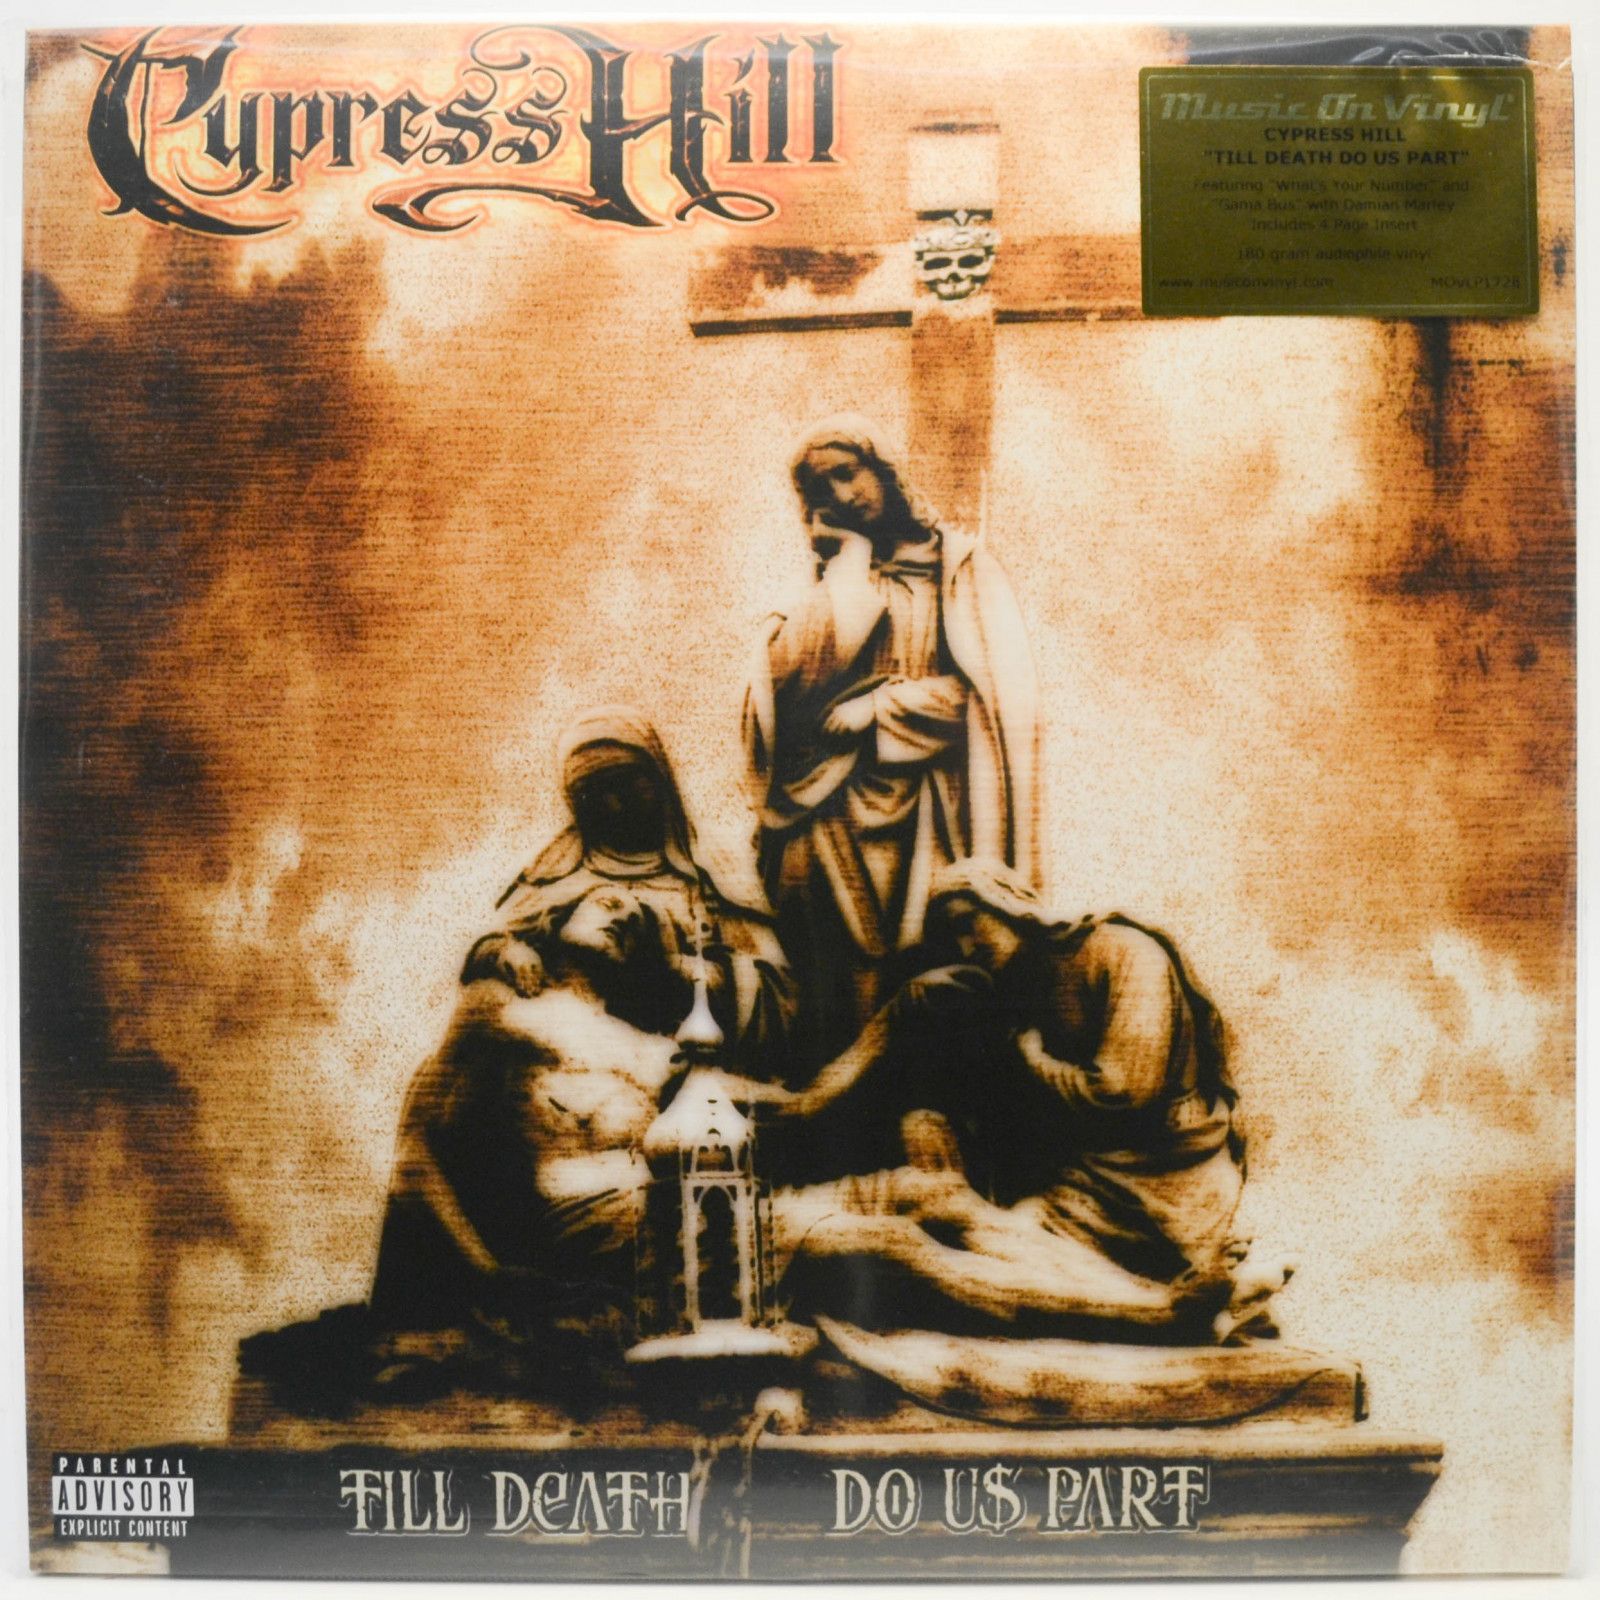 Cypress Hill — Till Death Do Us Part (2LP), 2004